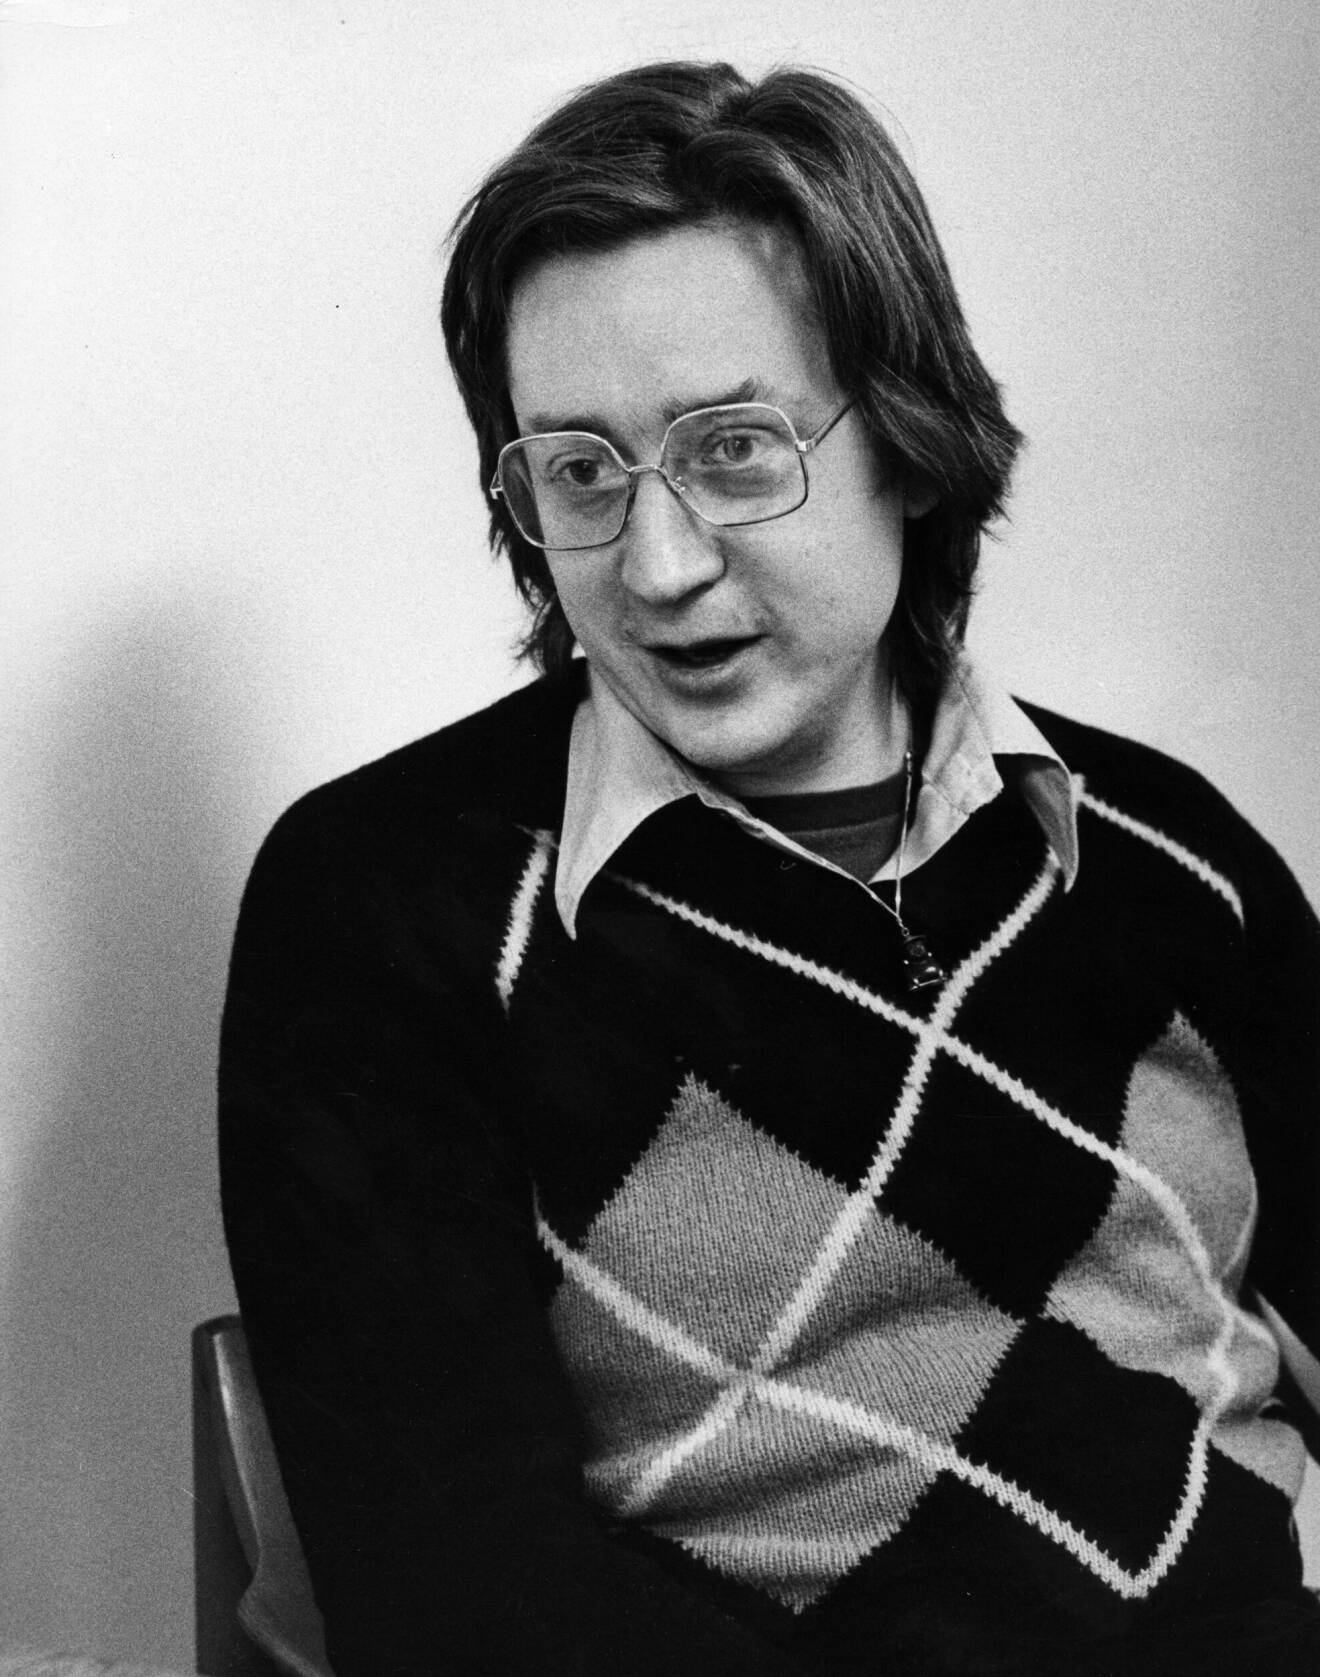 ARKIV 1977. Kriminologen och författaren Leif GW Persson